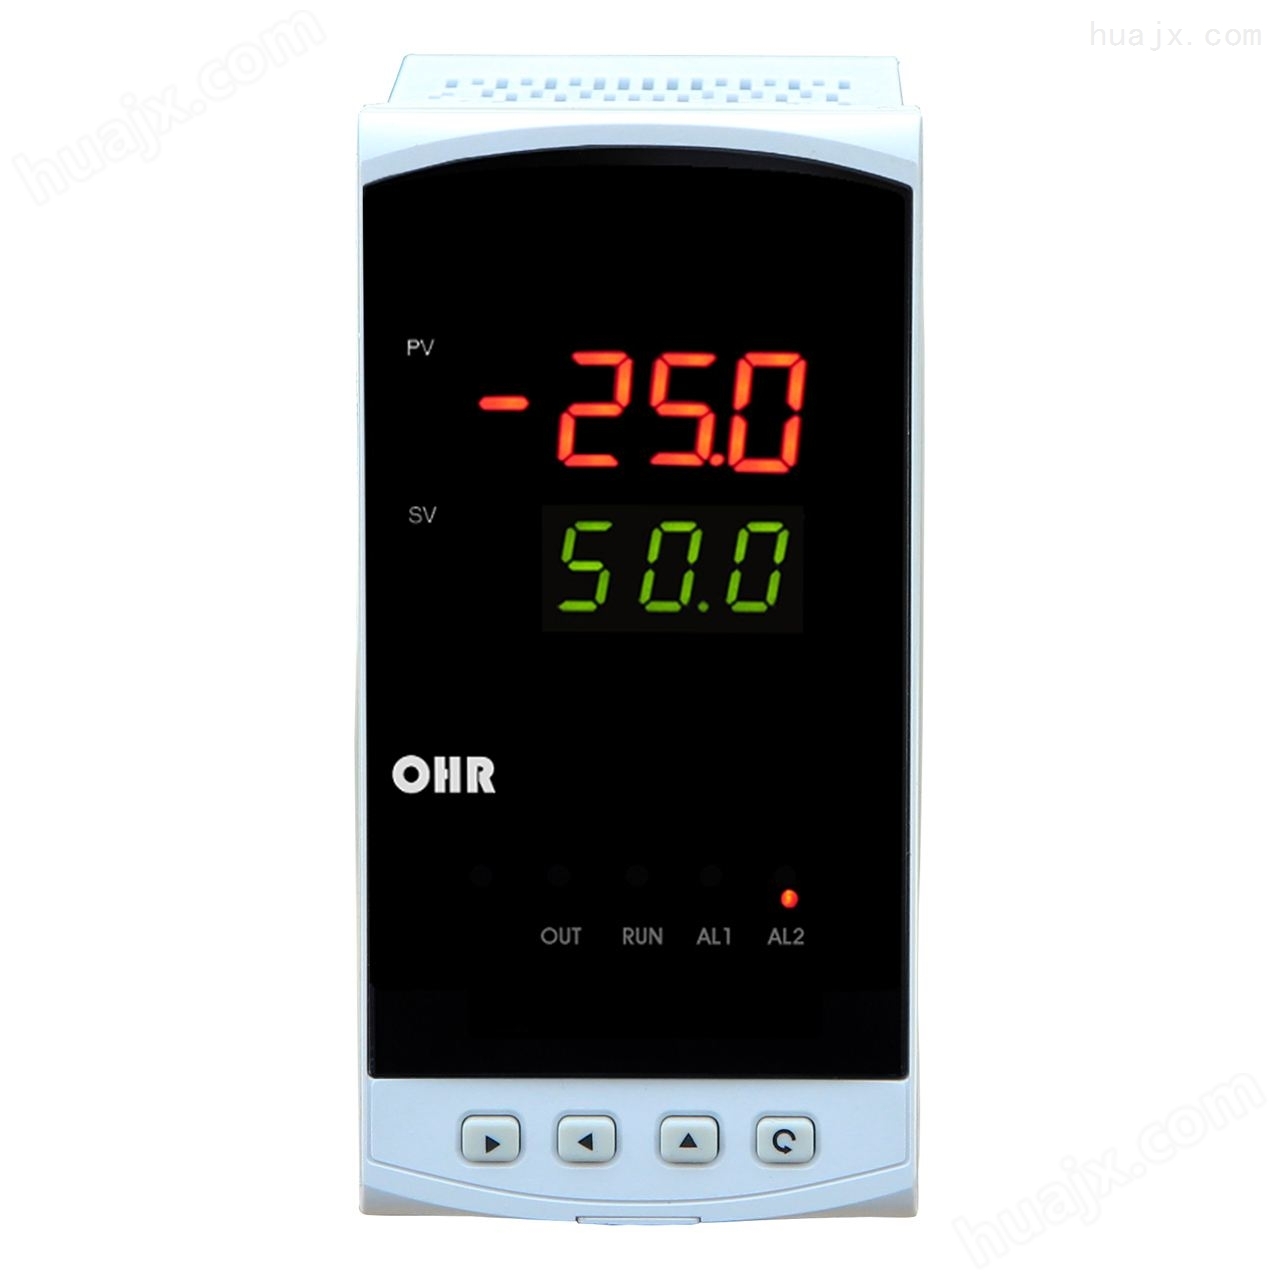 虹润网上商城推出OHR傻瓜式60段程序温控器